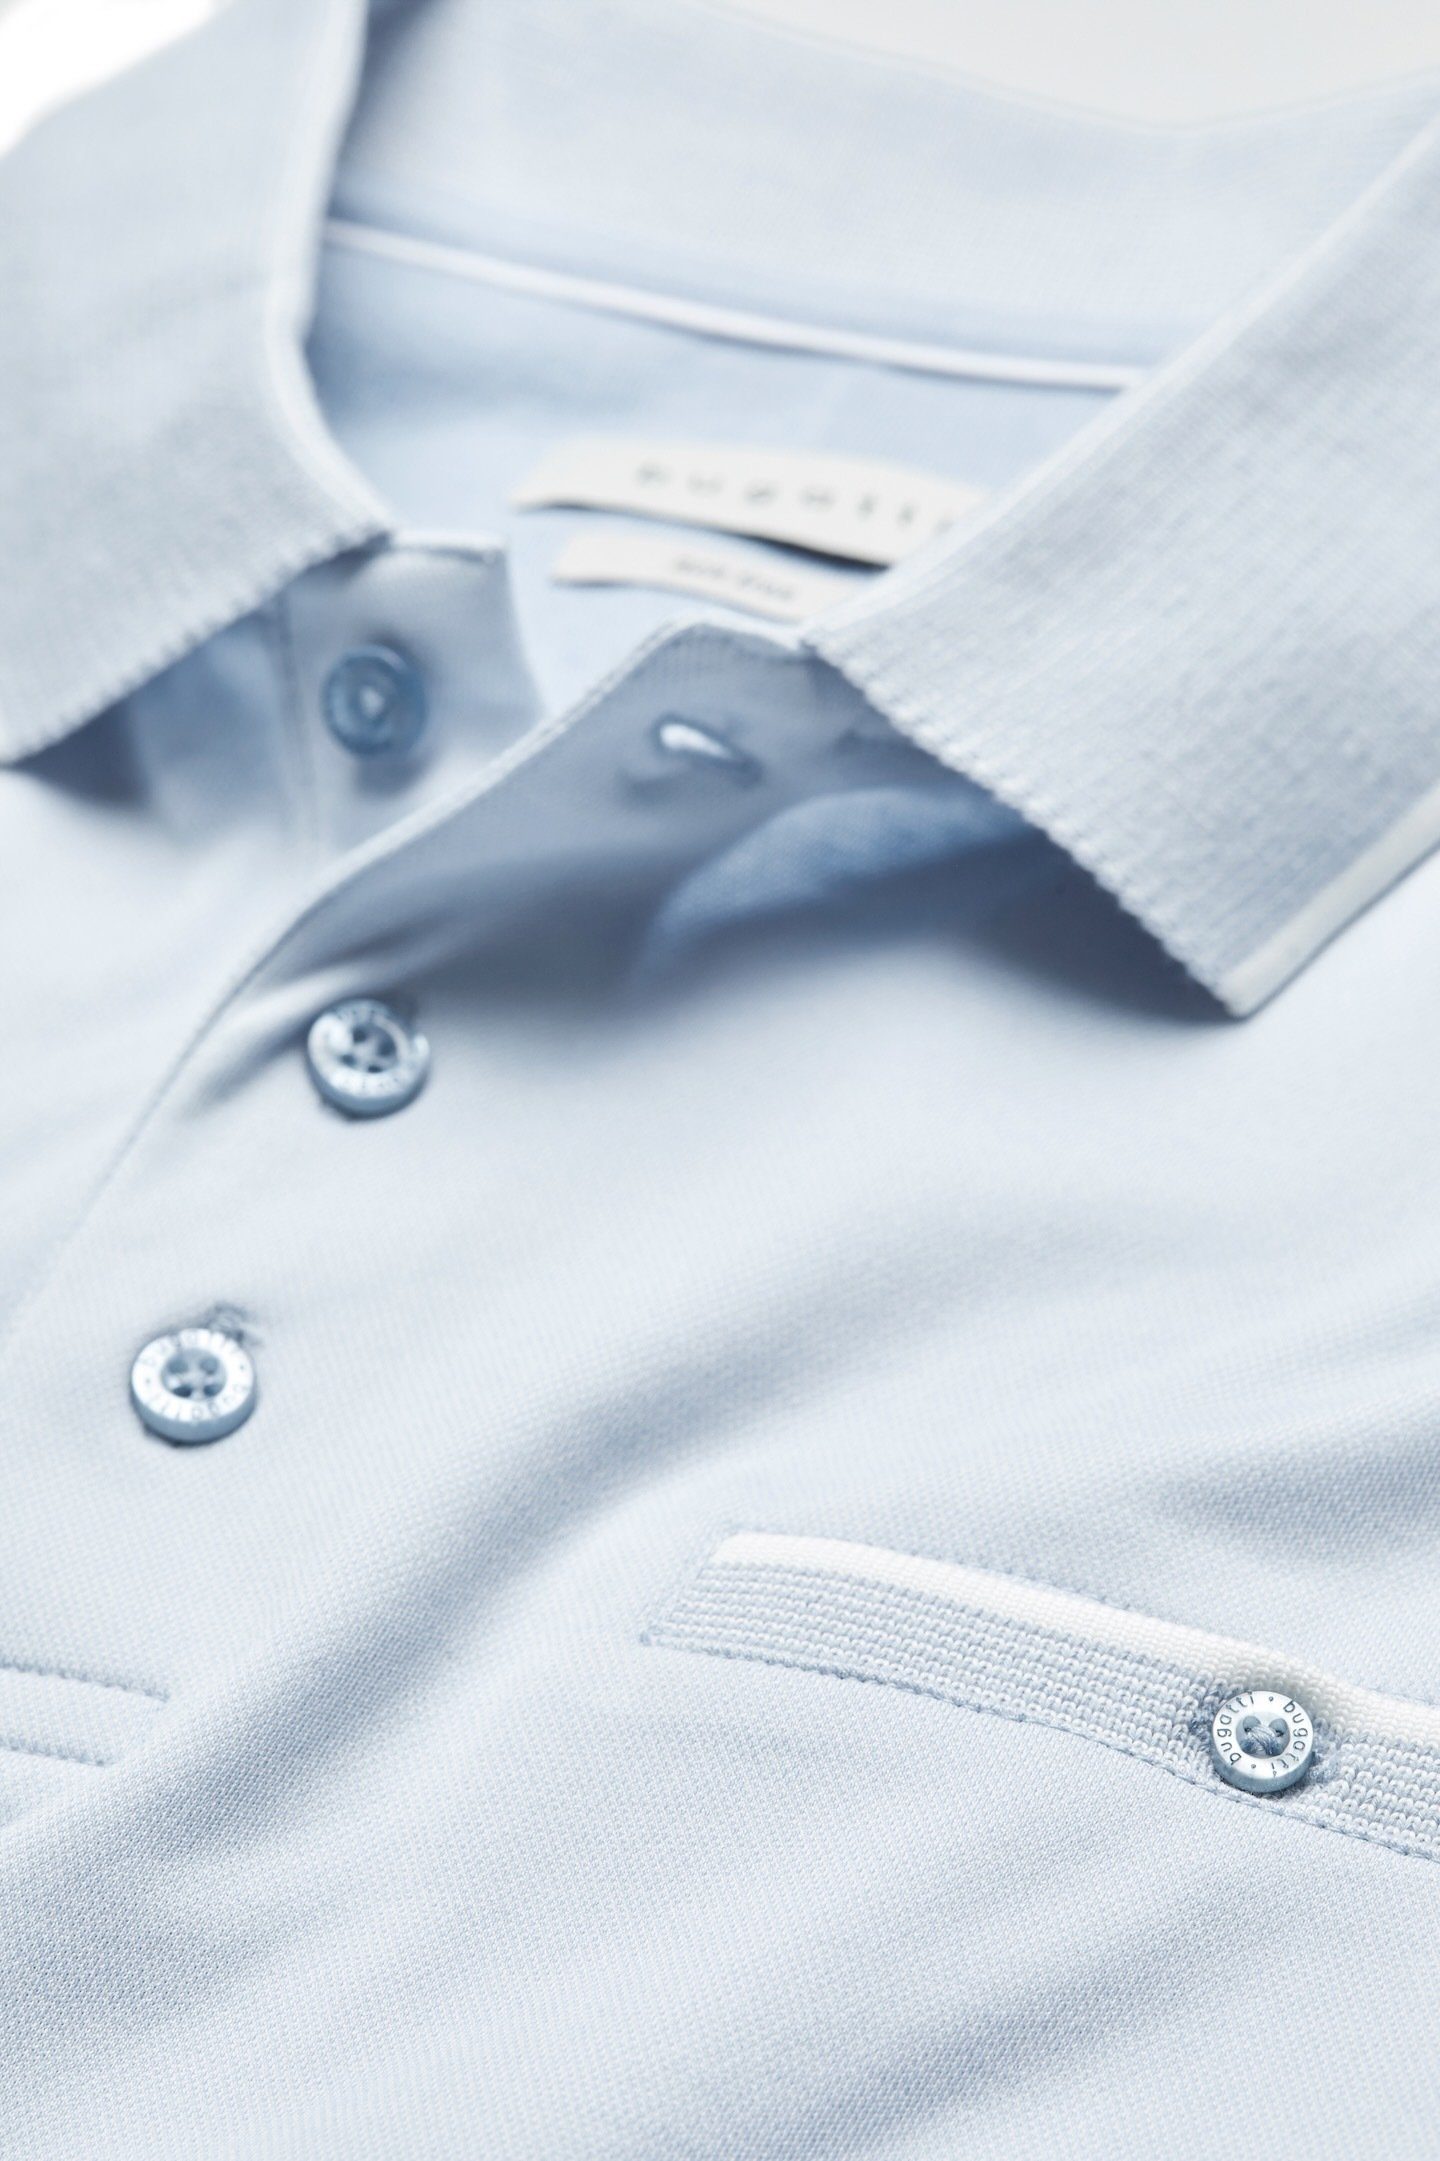 bugatti abgesetzten Details Poloshirt hellblau farblich mit